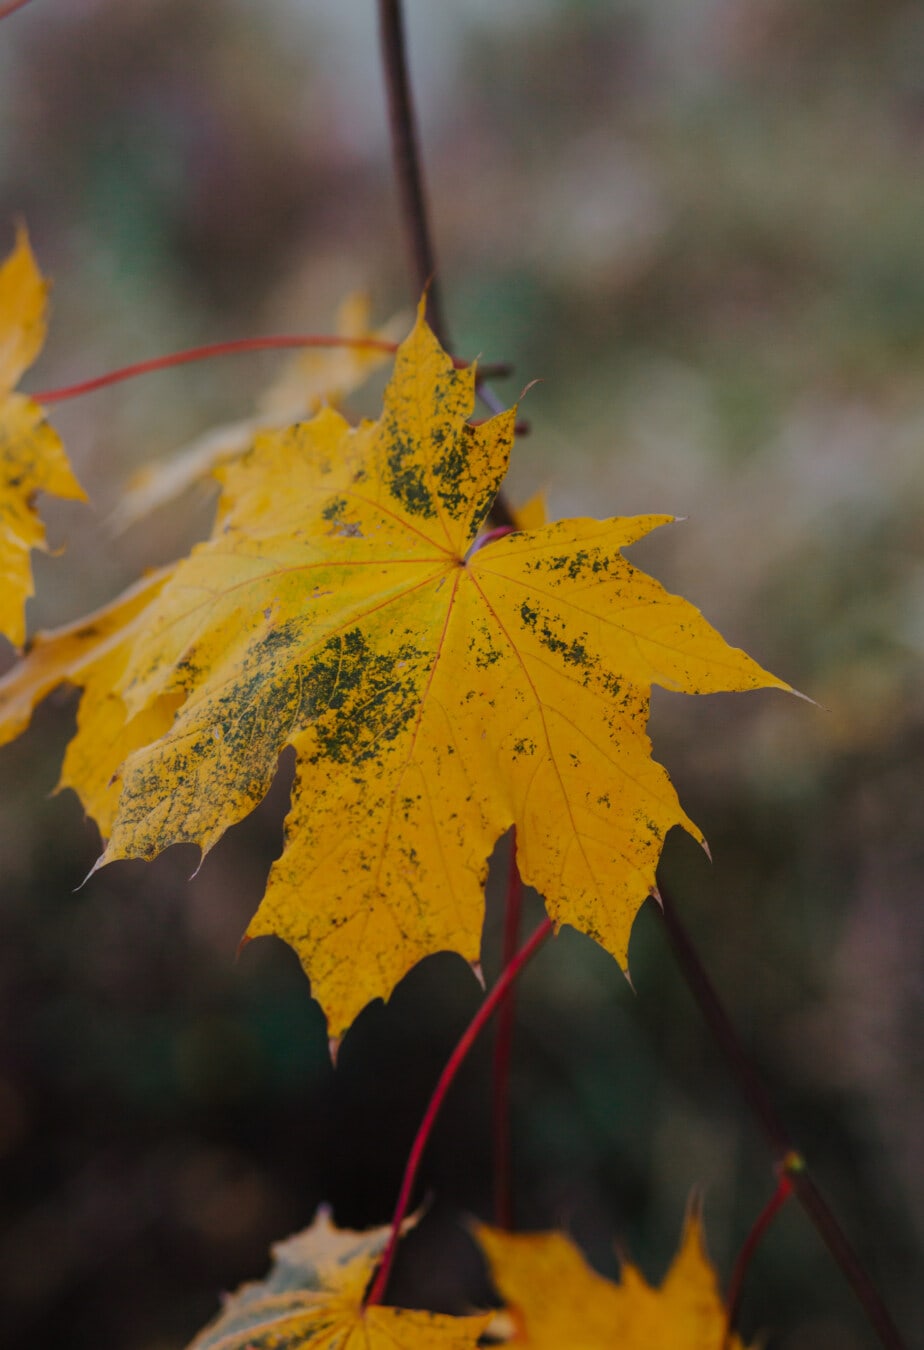 žluto hnědá, žluté listy, žlutá, větvička, pobočky, podzim, strom, listy, příroda, list